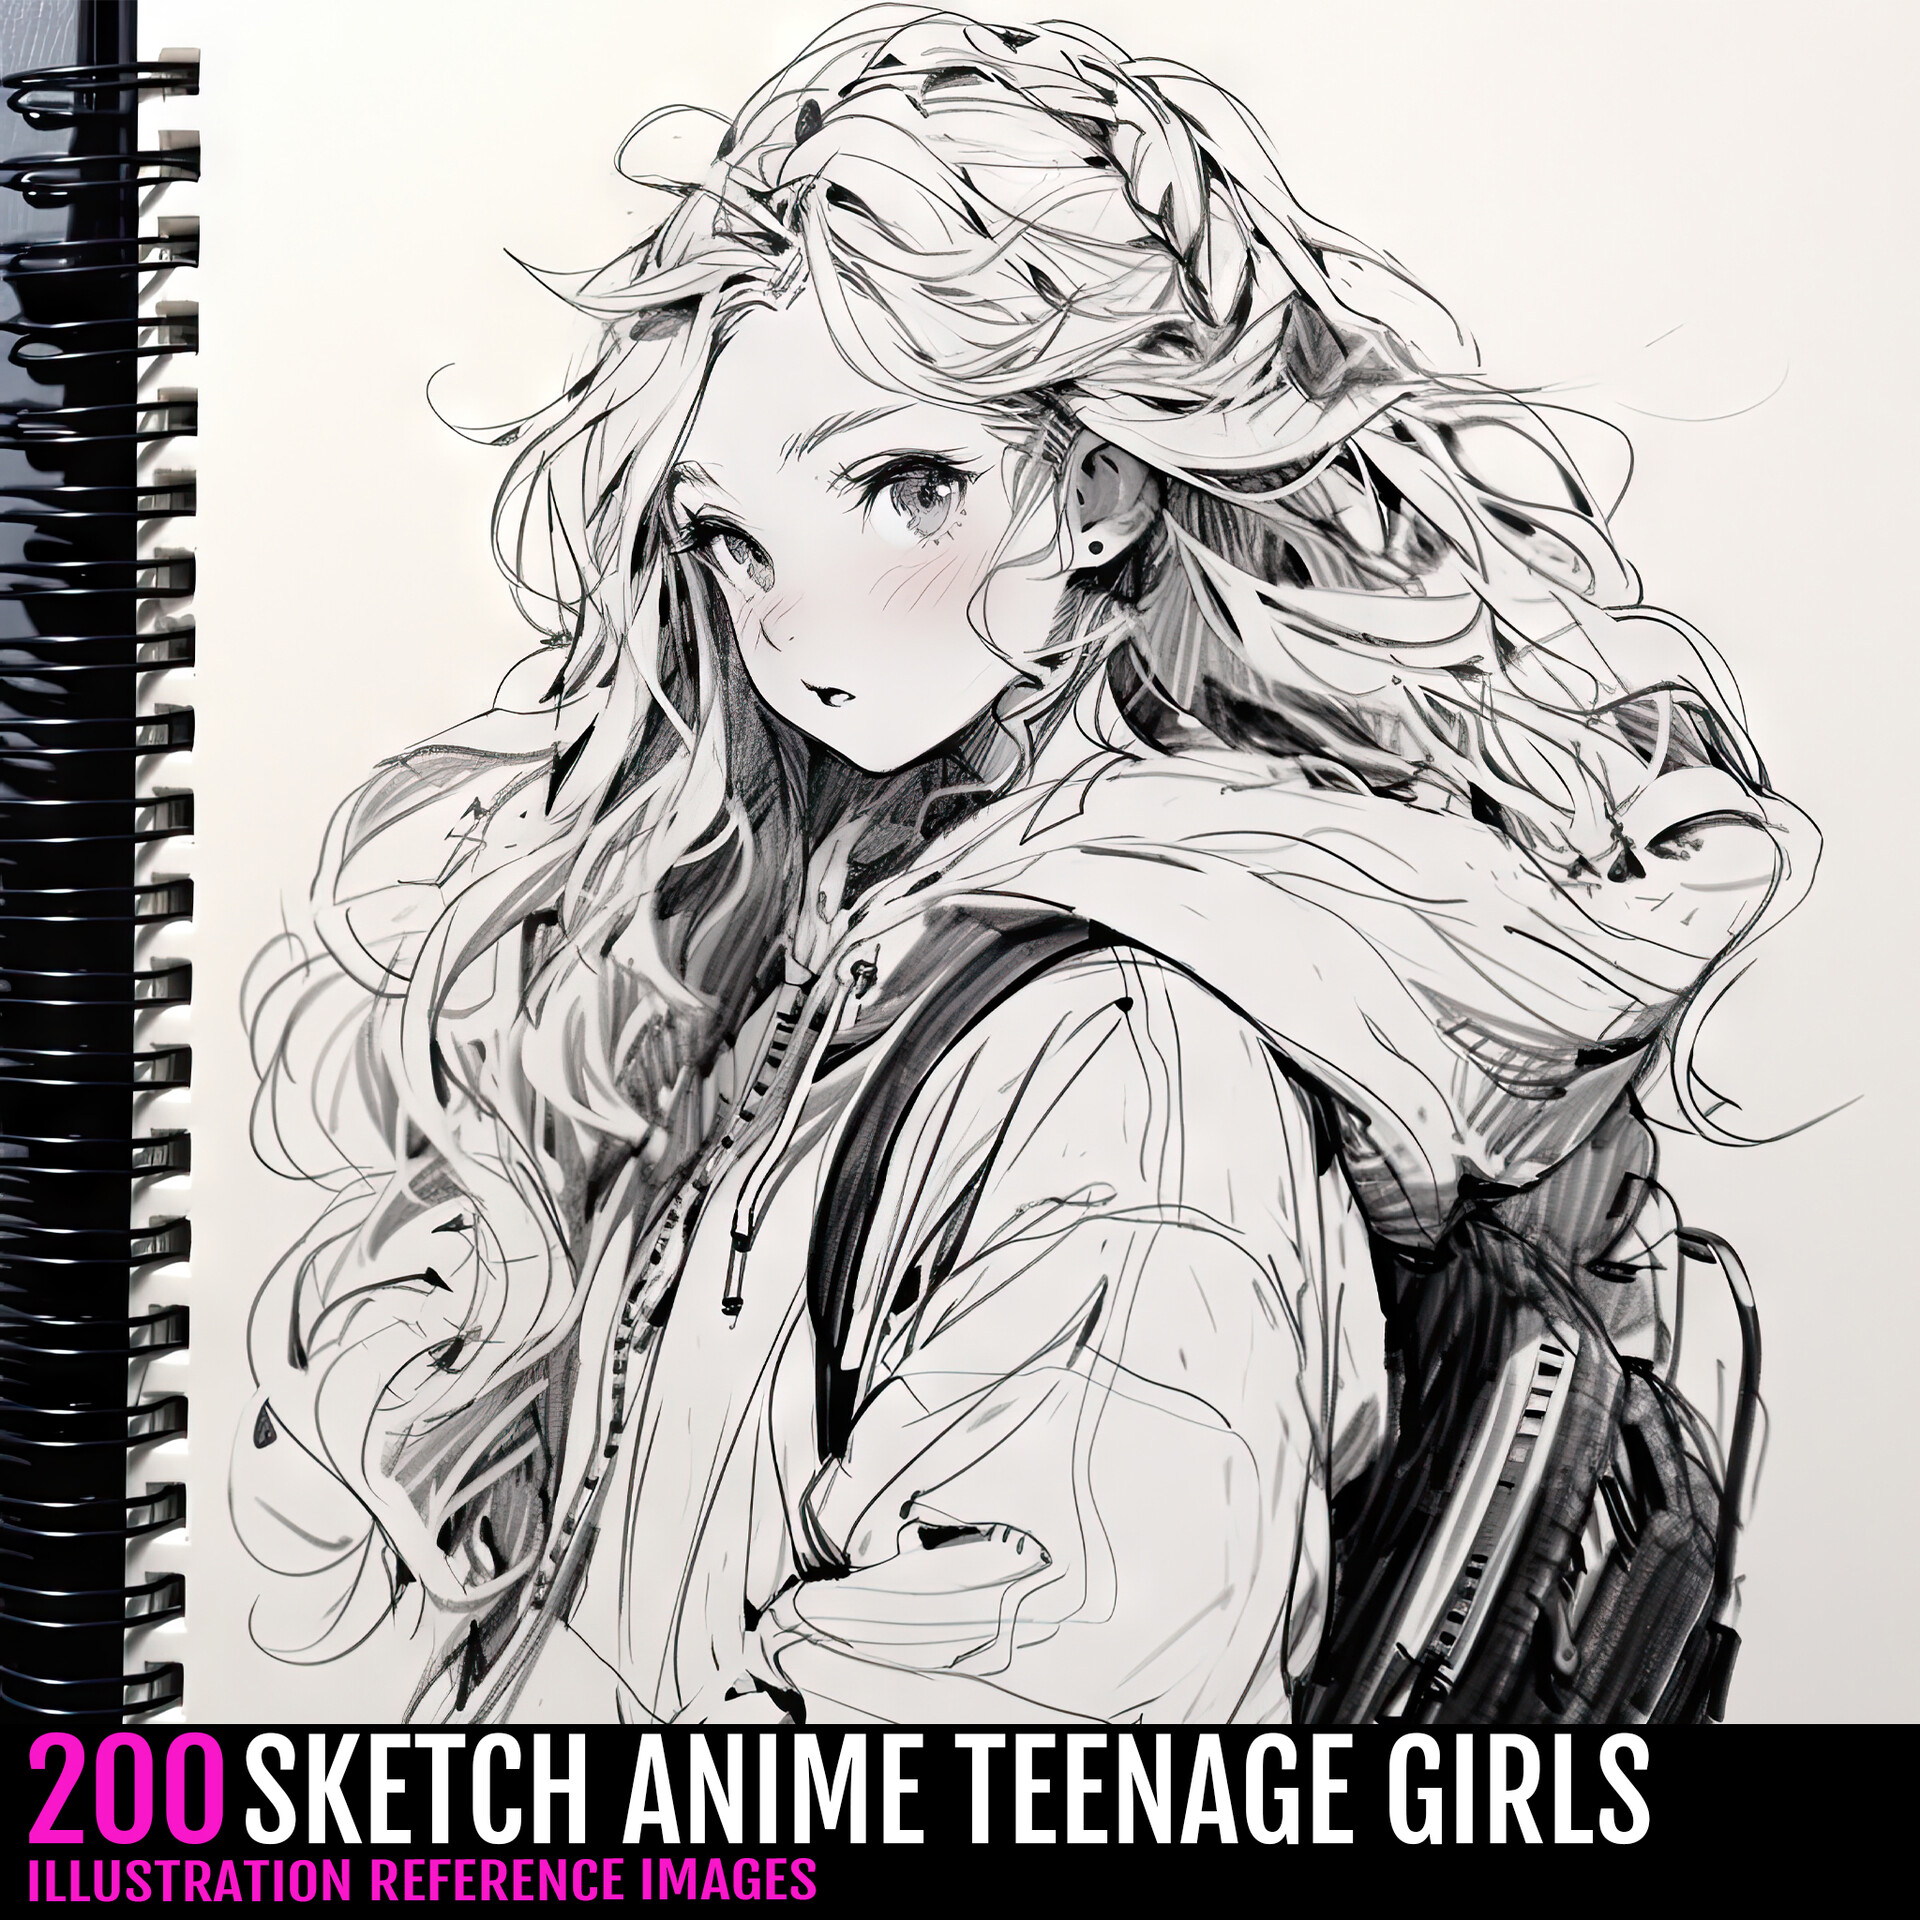 https://cdna.artstation.com/p/assets/images/images/068/319/376/large/isabelle-art-sketch-anime-teenage-girls-03.jpg?1697533569